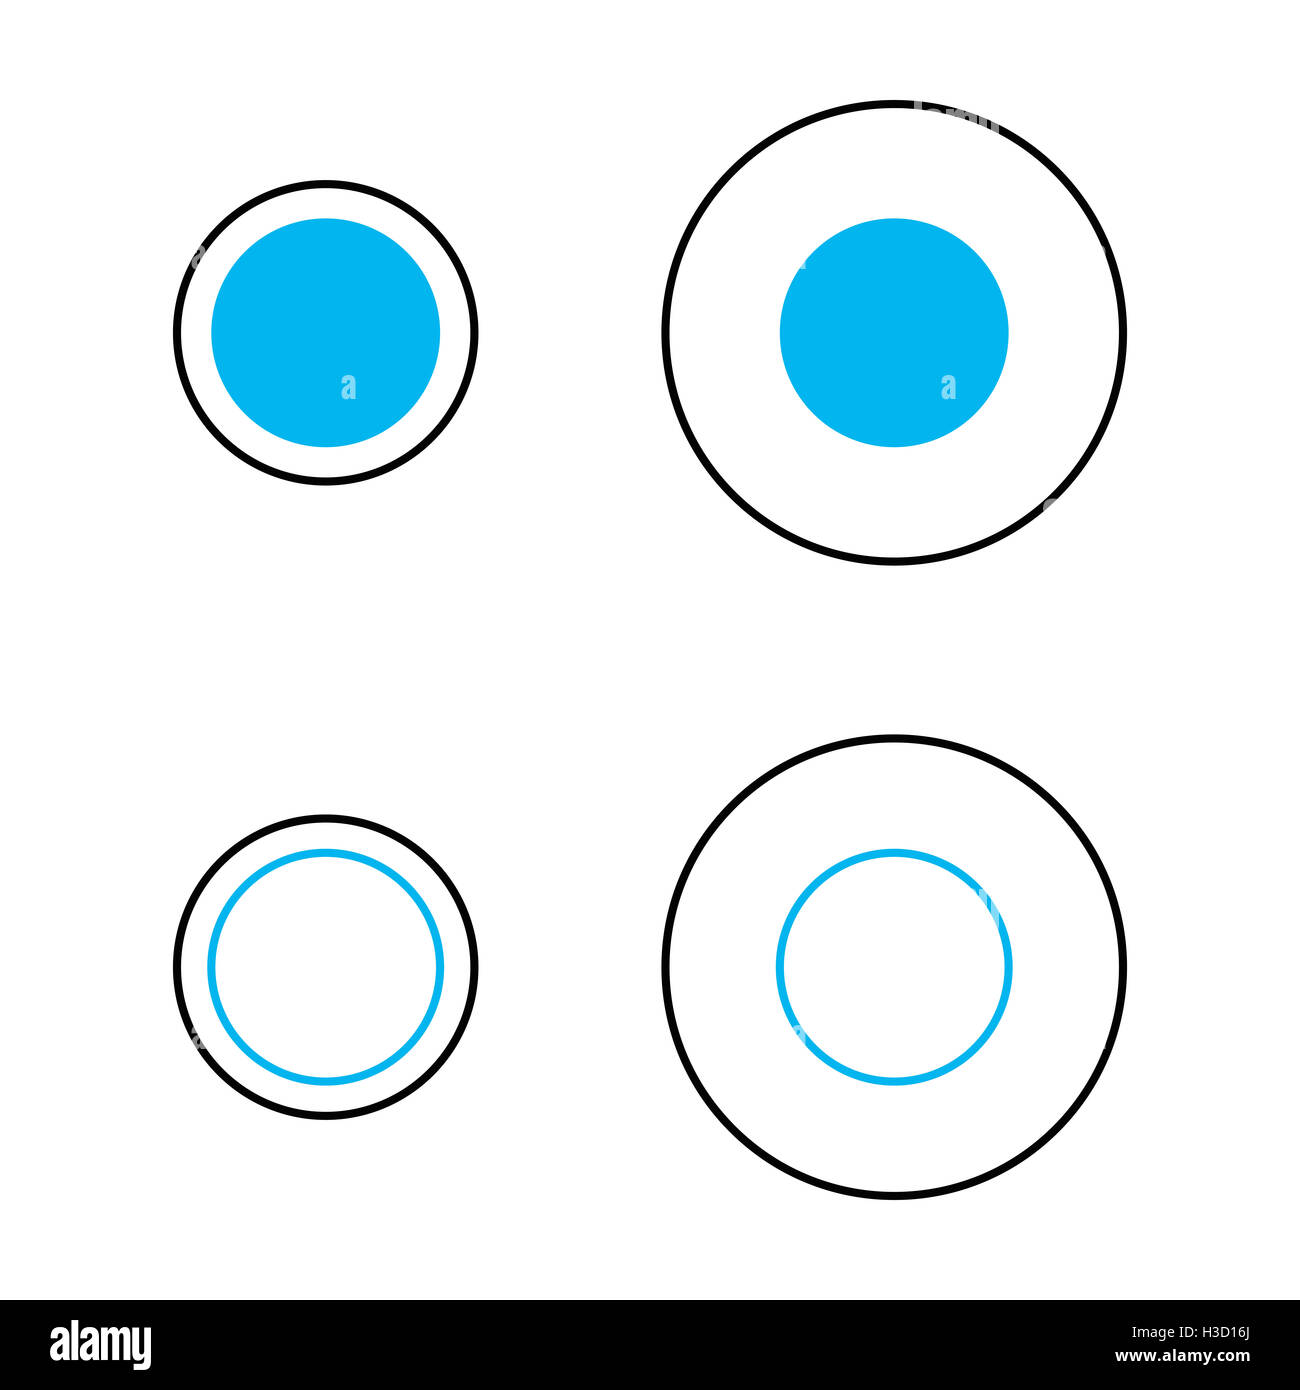 Delboeuf illusione ottica della dimensione relativa percezione. I cerchi blu sono della stessa dimensione e circondato da una corona circolare. Foto Stock